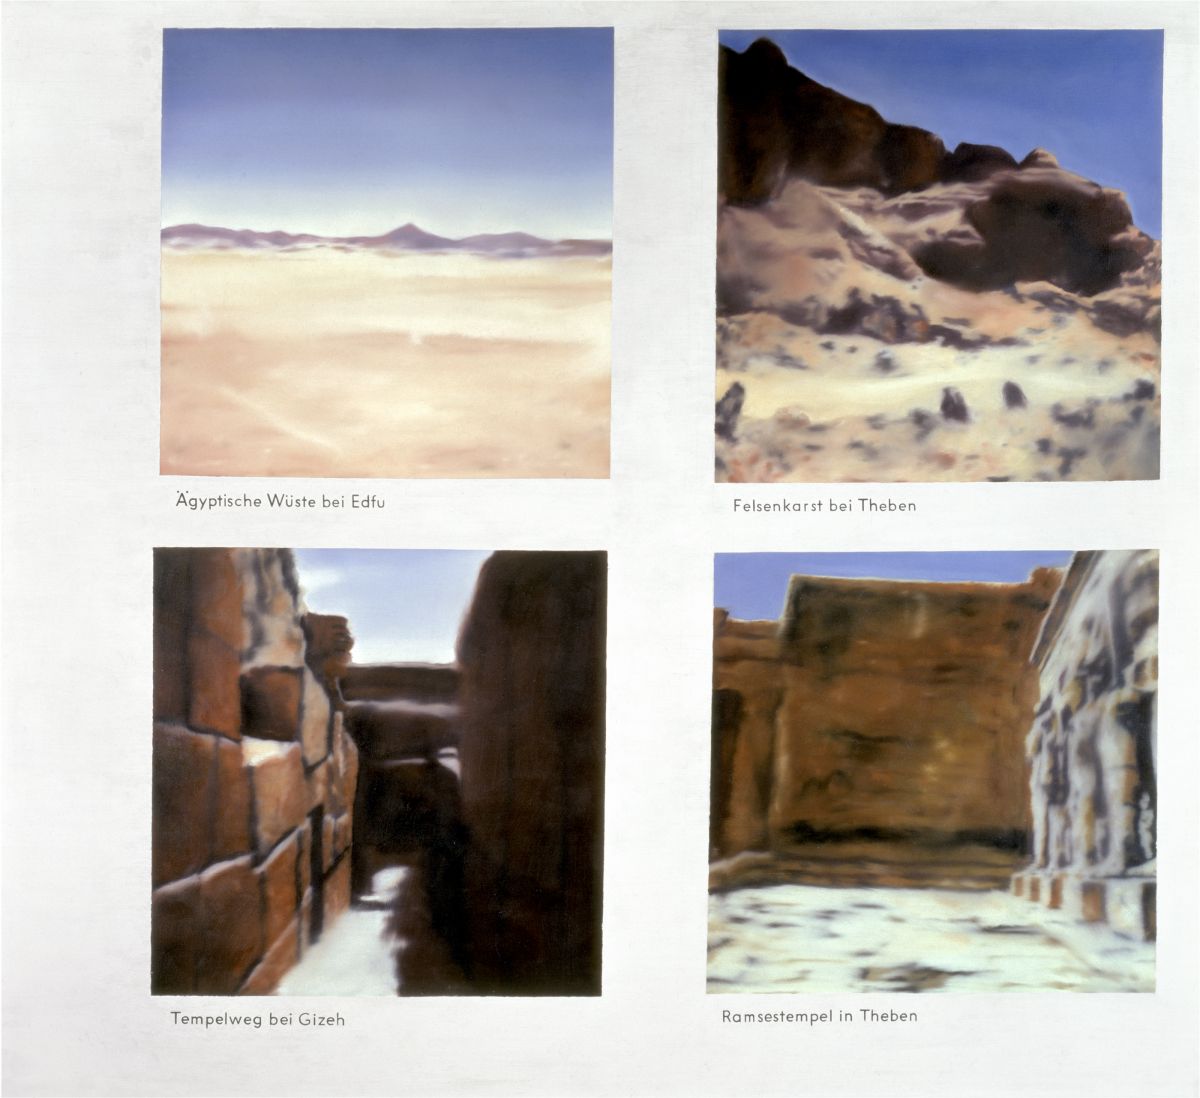 Ägyptische Landschaft, 1964/65 Öl auf Leinwand, 150 x 165 cm, GR 53 Private Collection. Courtesy Hauser & Wirth Collection Services © Gerhard Richter 2020